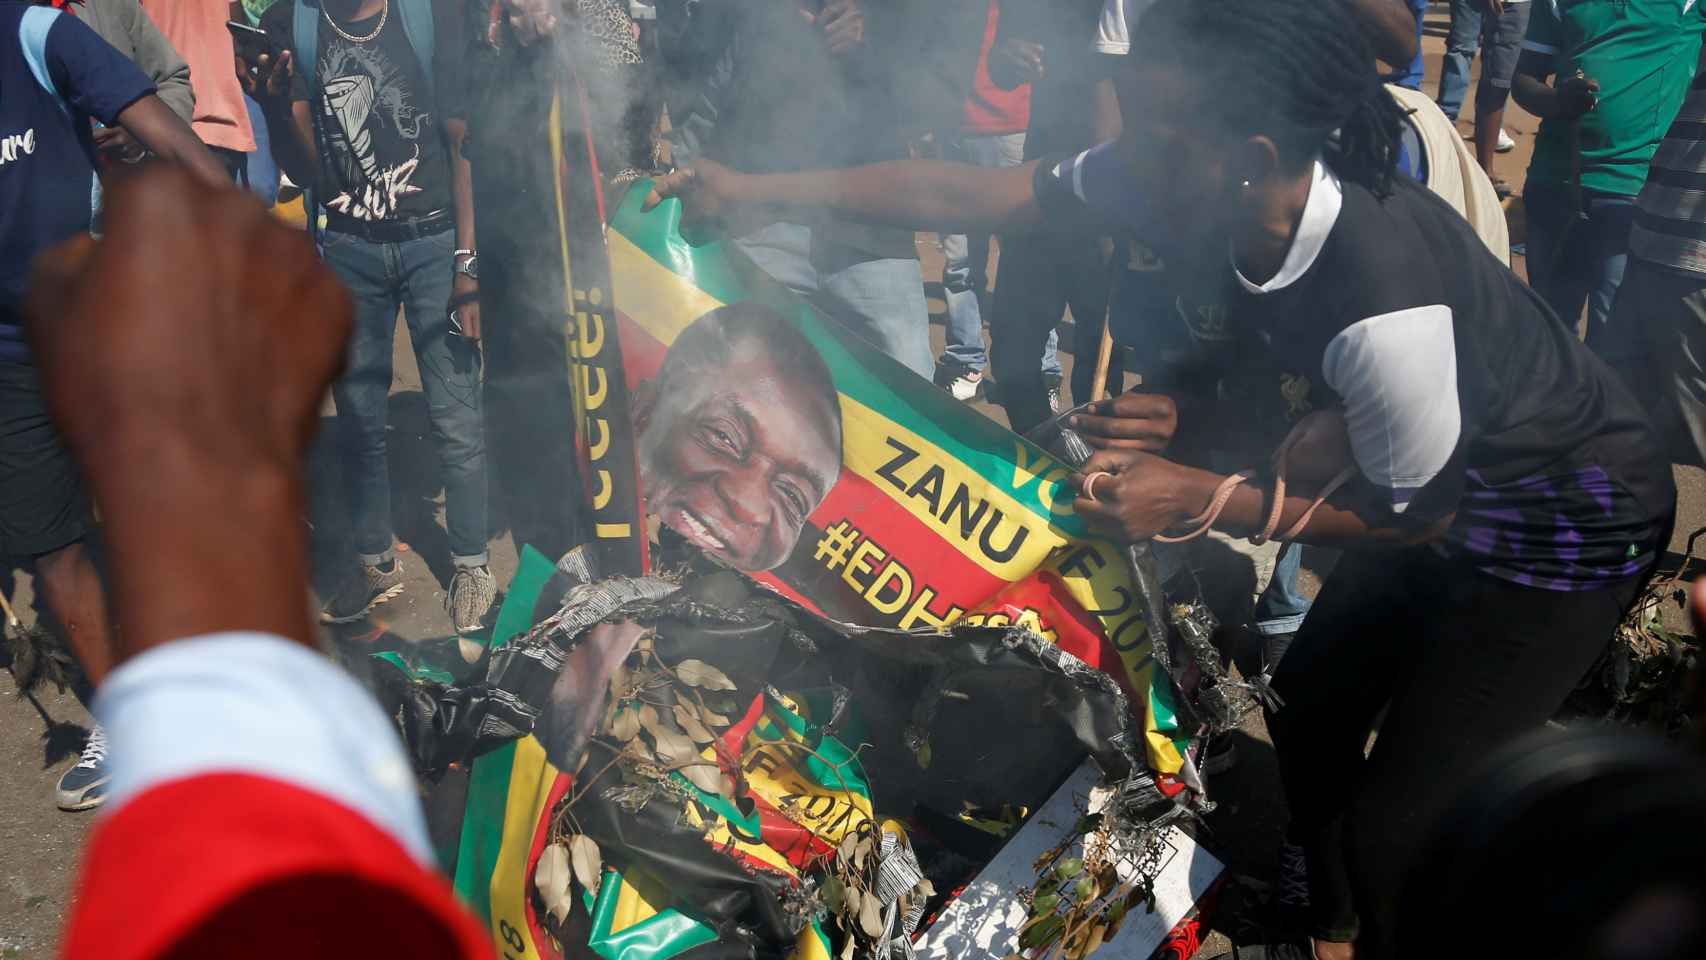 Los partidarios del partido Movimiento por el Cambio Democrático (MDC) queman una pancarta electoral con la cara del presidente de Zimbabwe, Emmerson Mnangagwa.